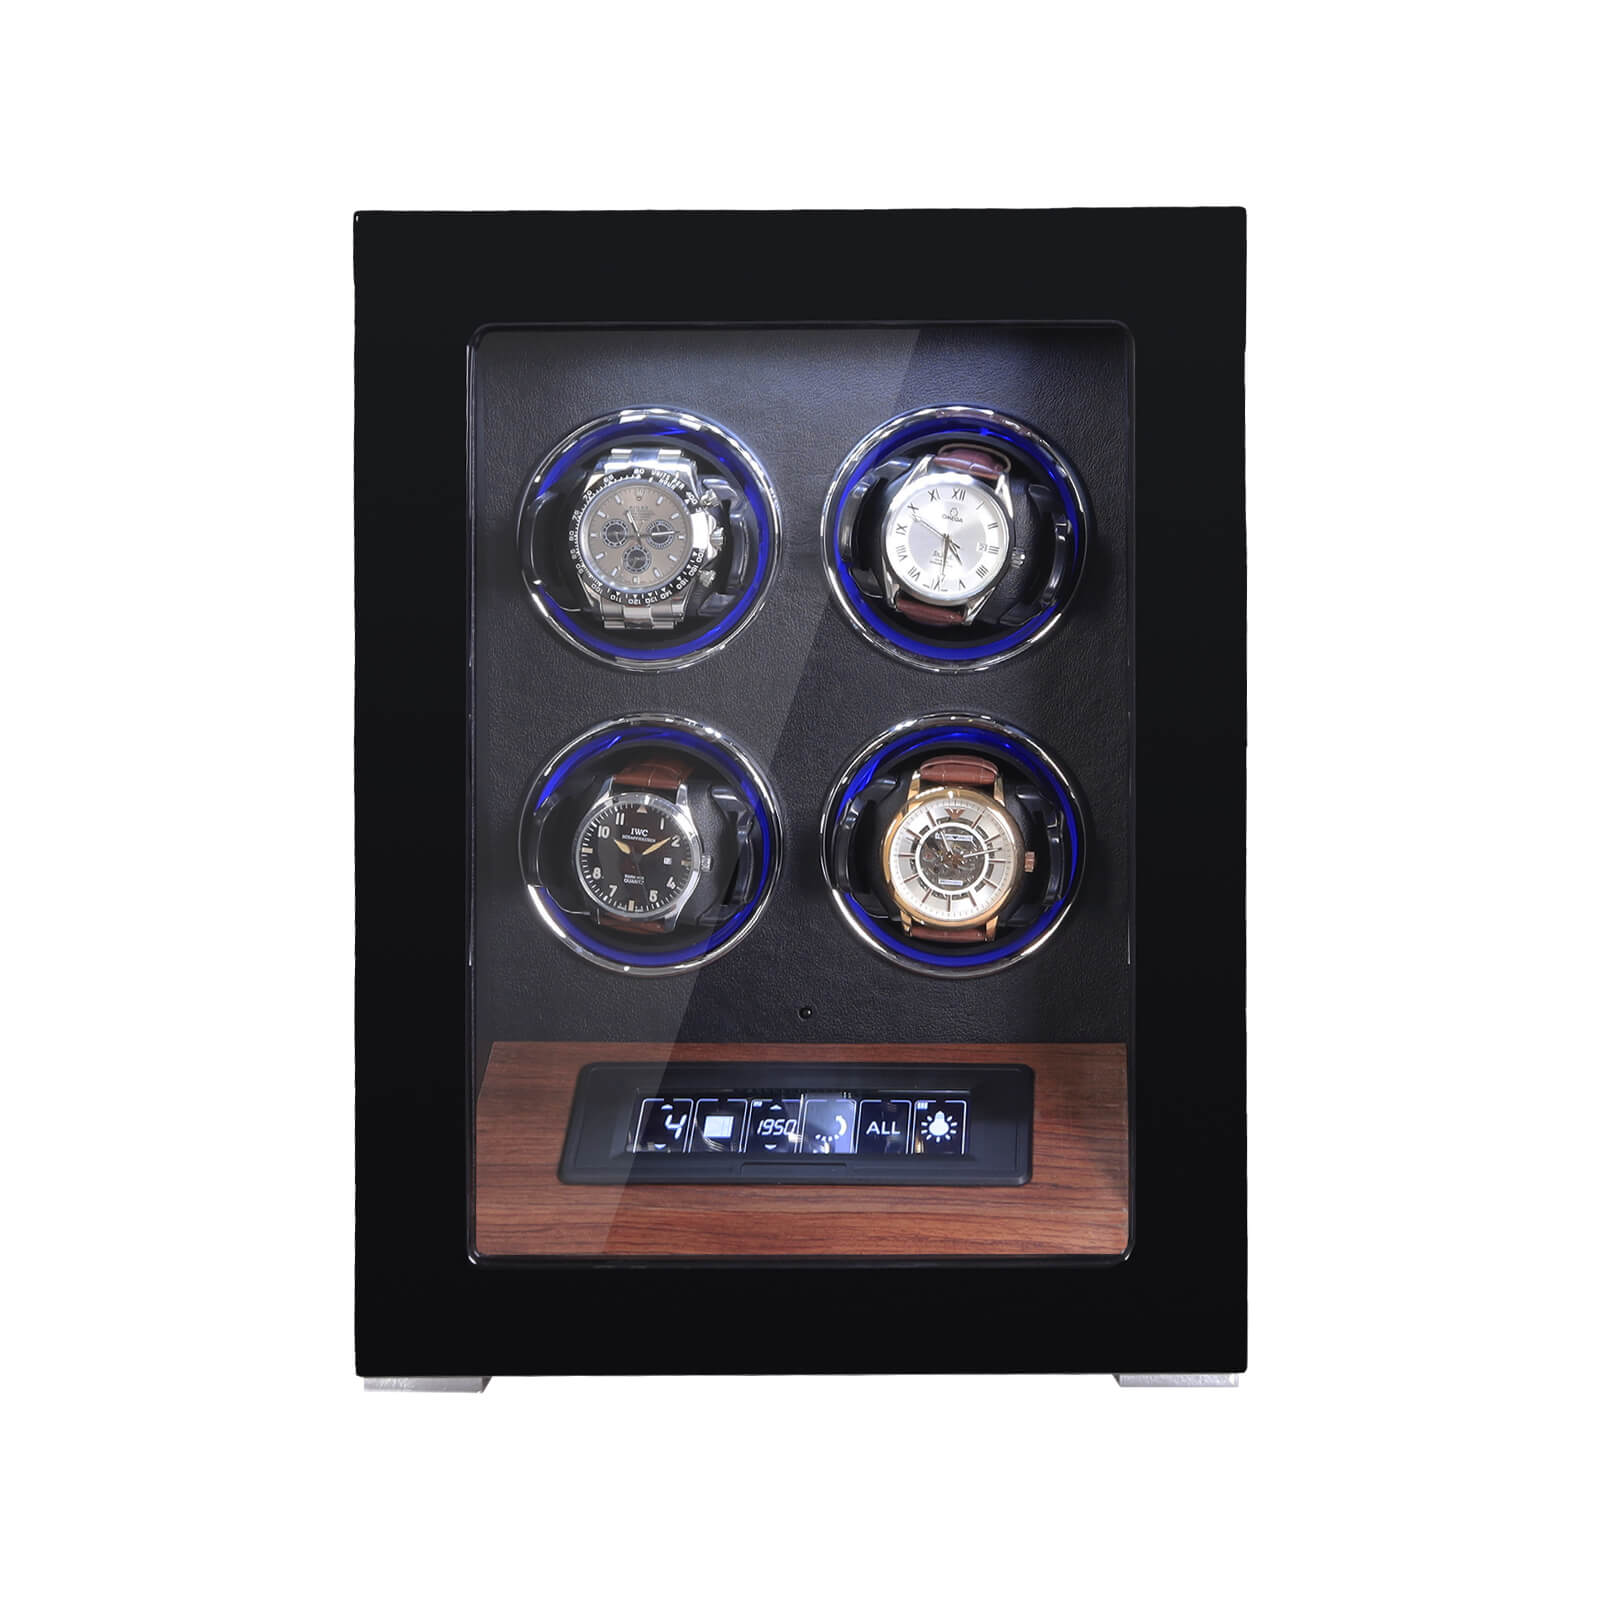 4 remontoirs de montre avec éclairage d'ambiance RVB déverrouillé par empreinte digitale